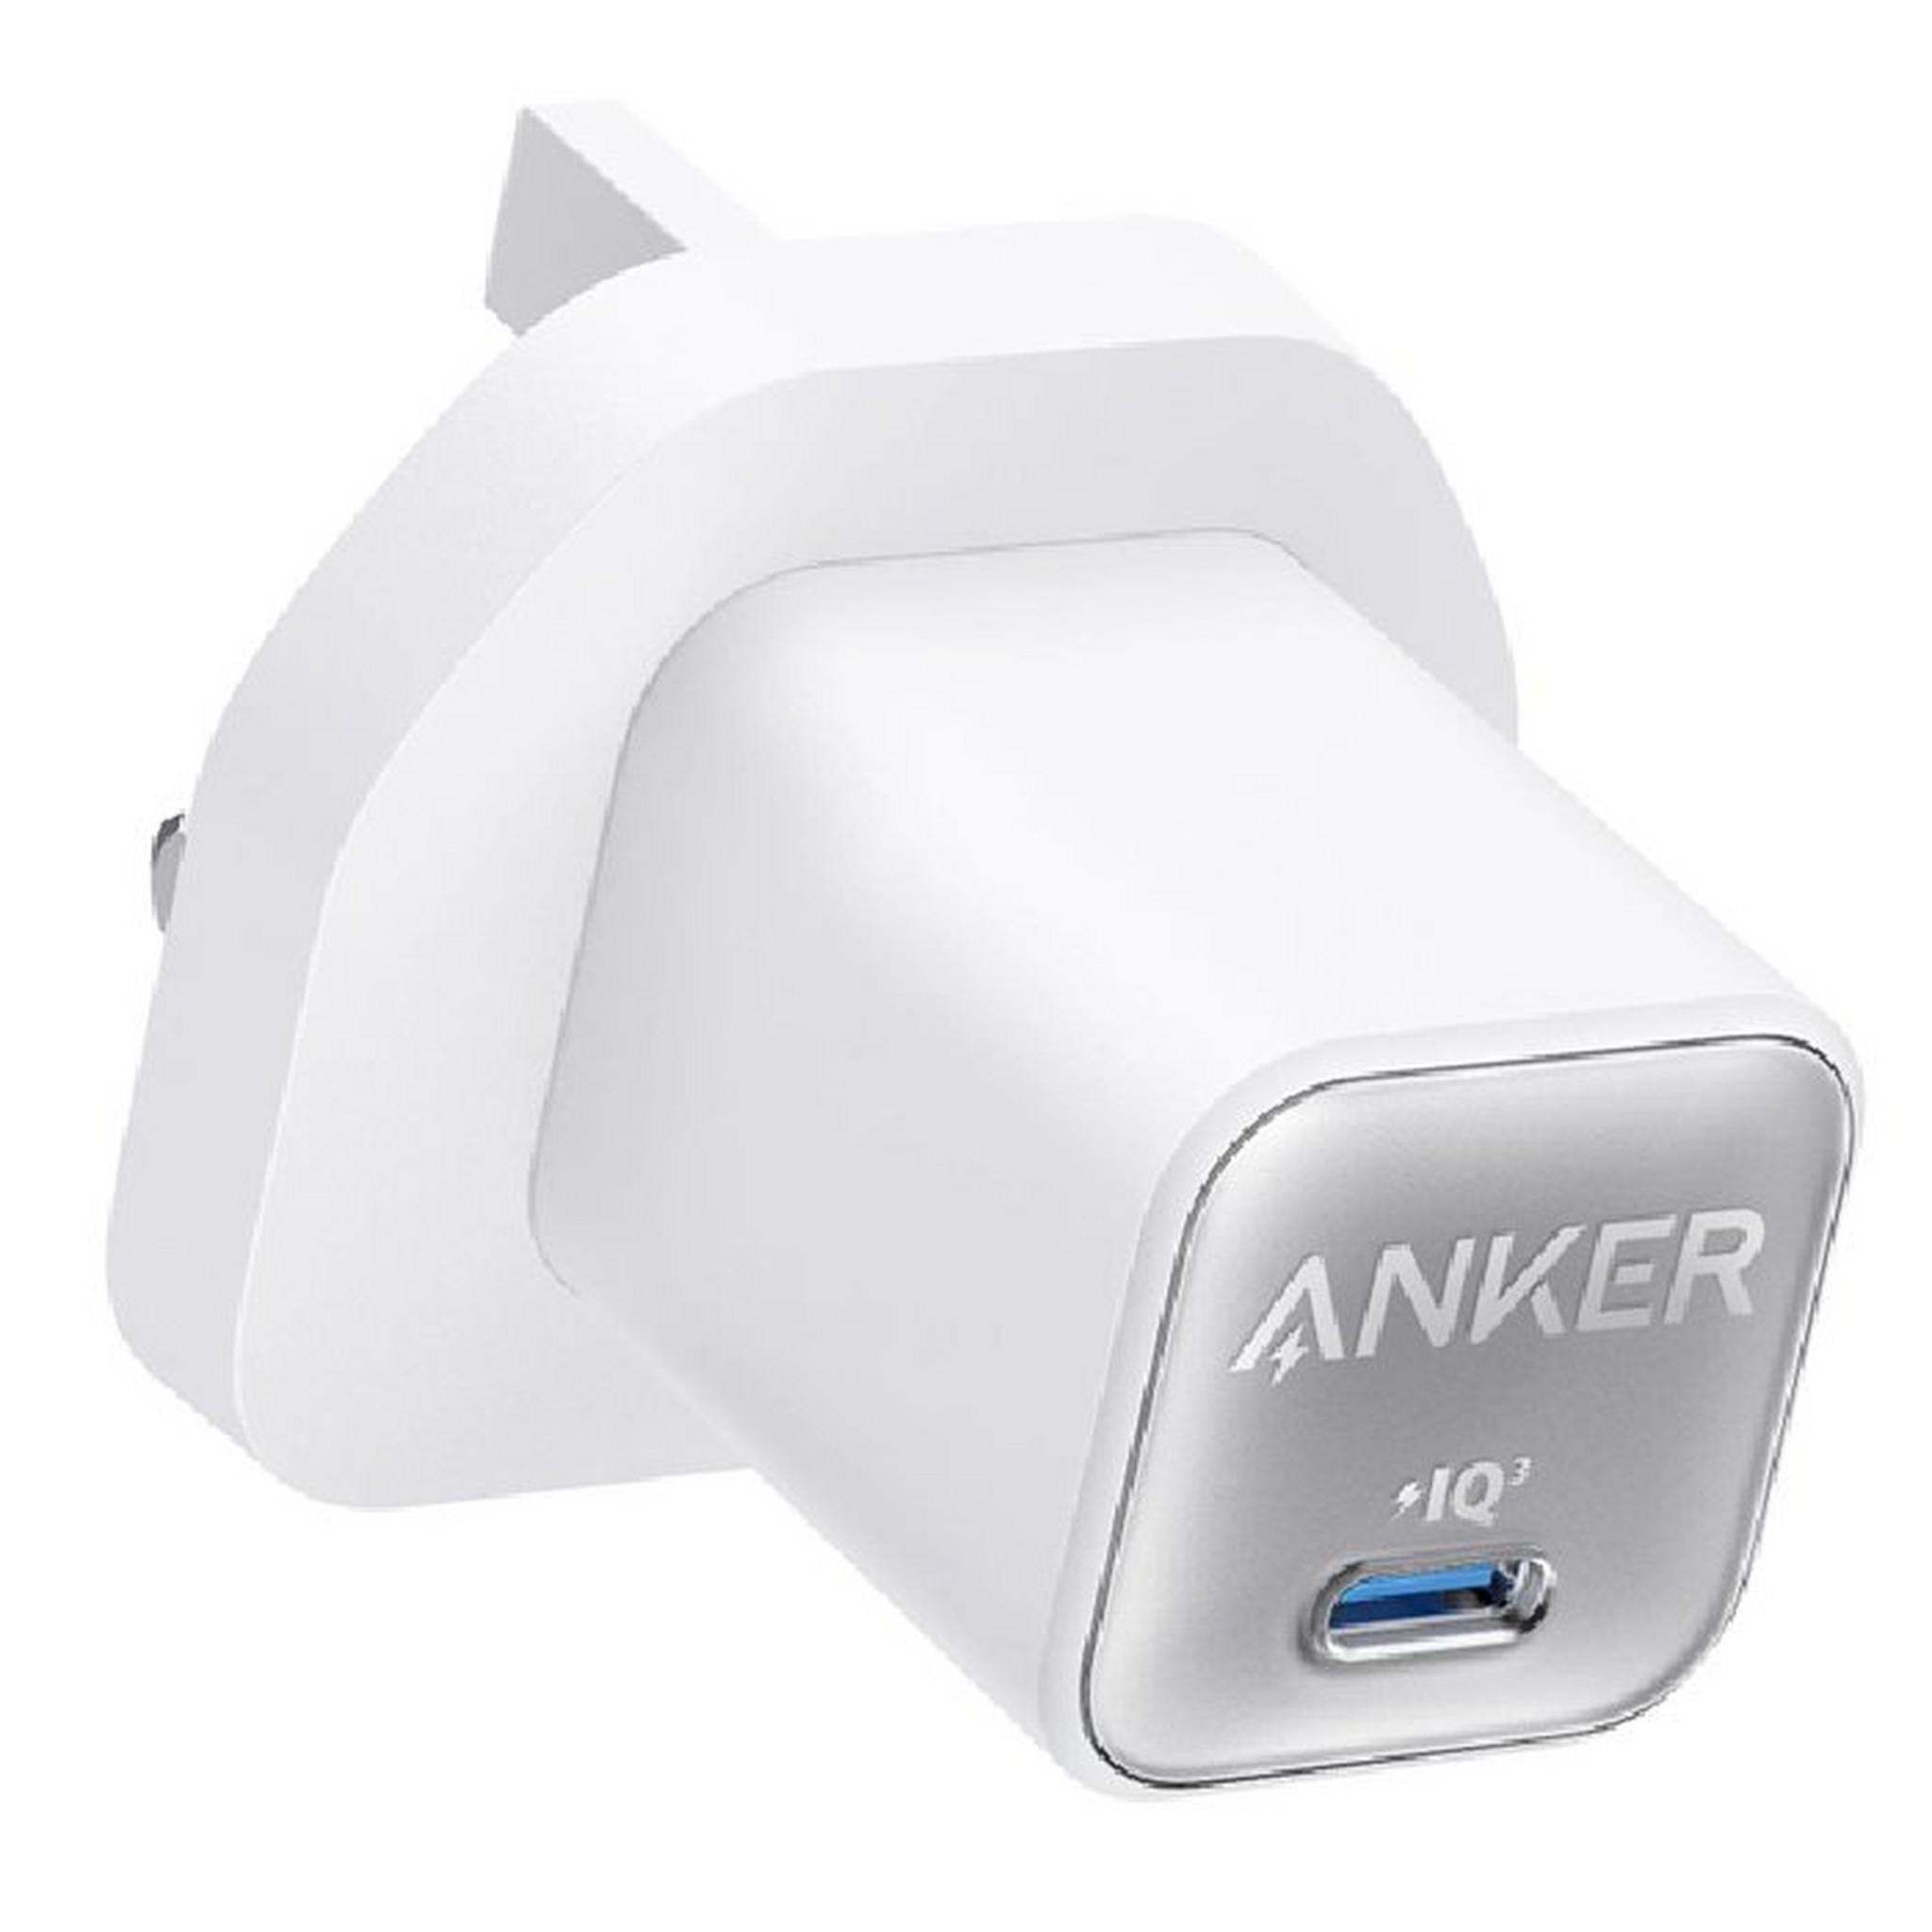 Anker 511 Wall Charger, Nano 3, 30W, A2147K21 - White